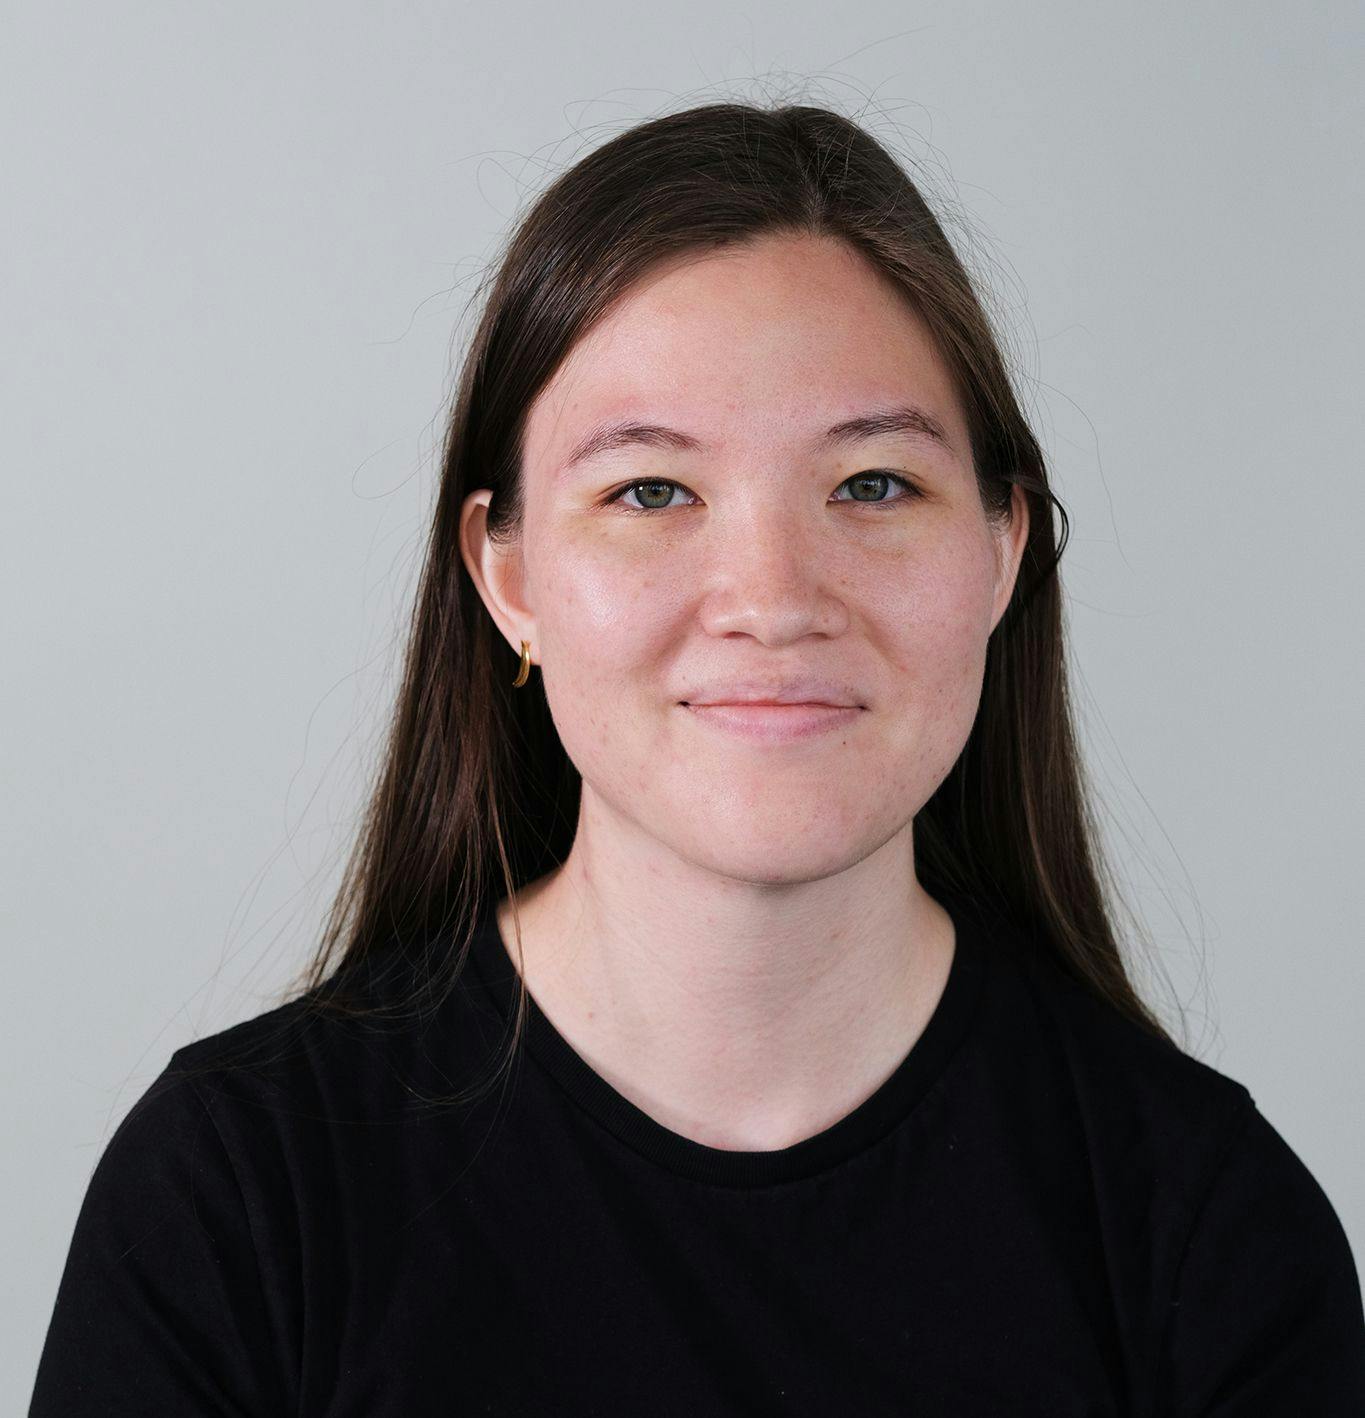 Sarah Shader's Profile image